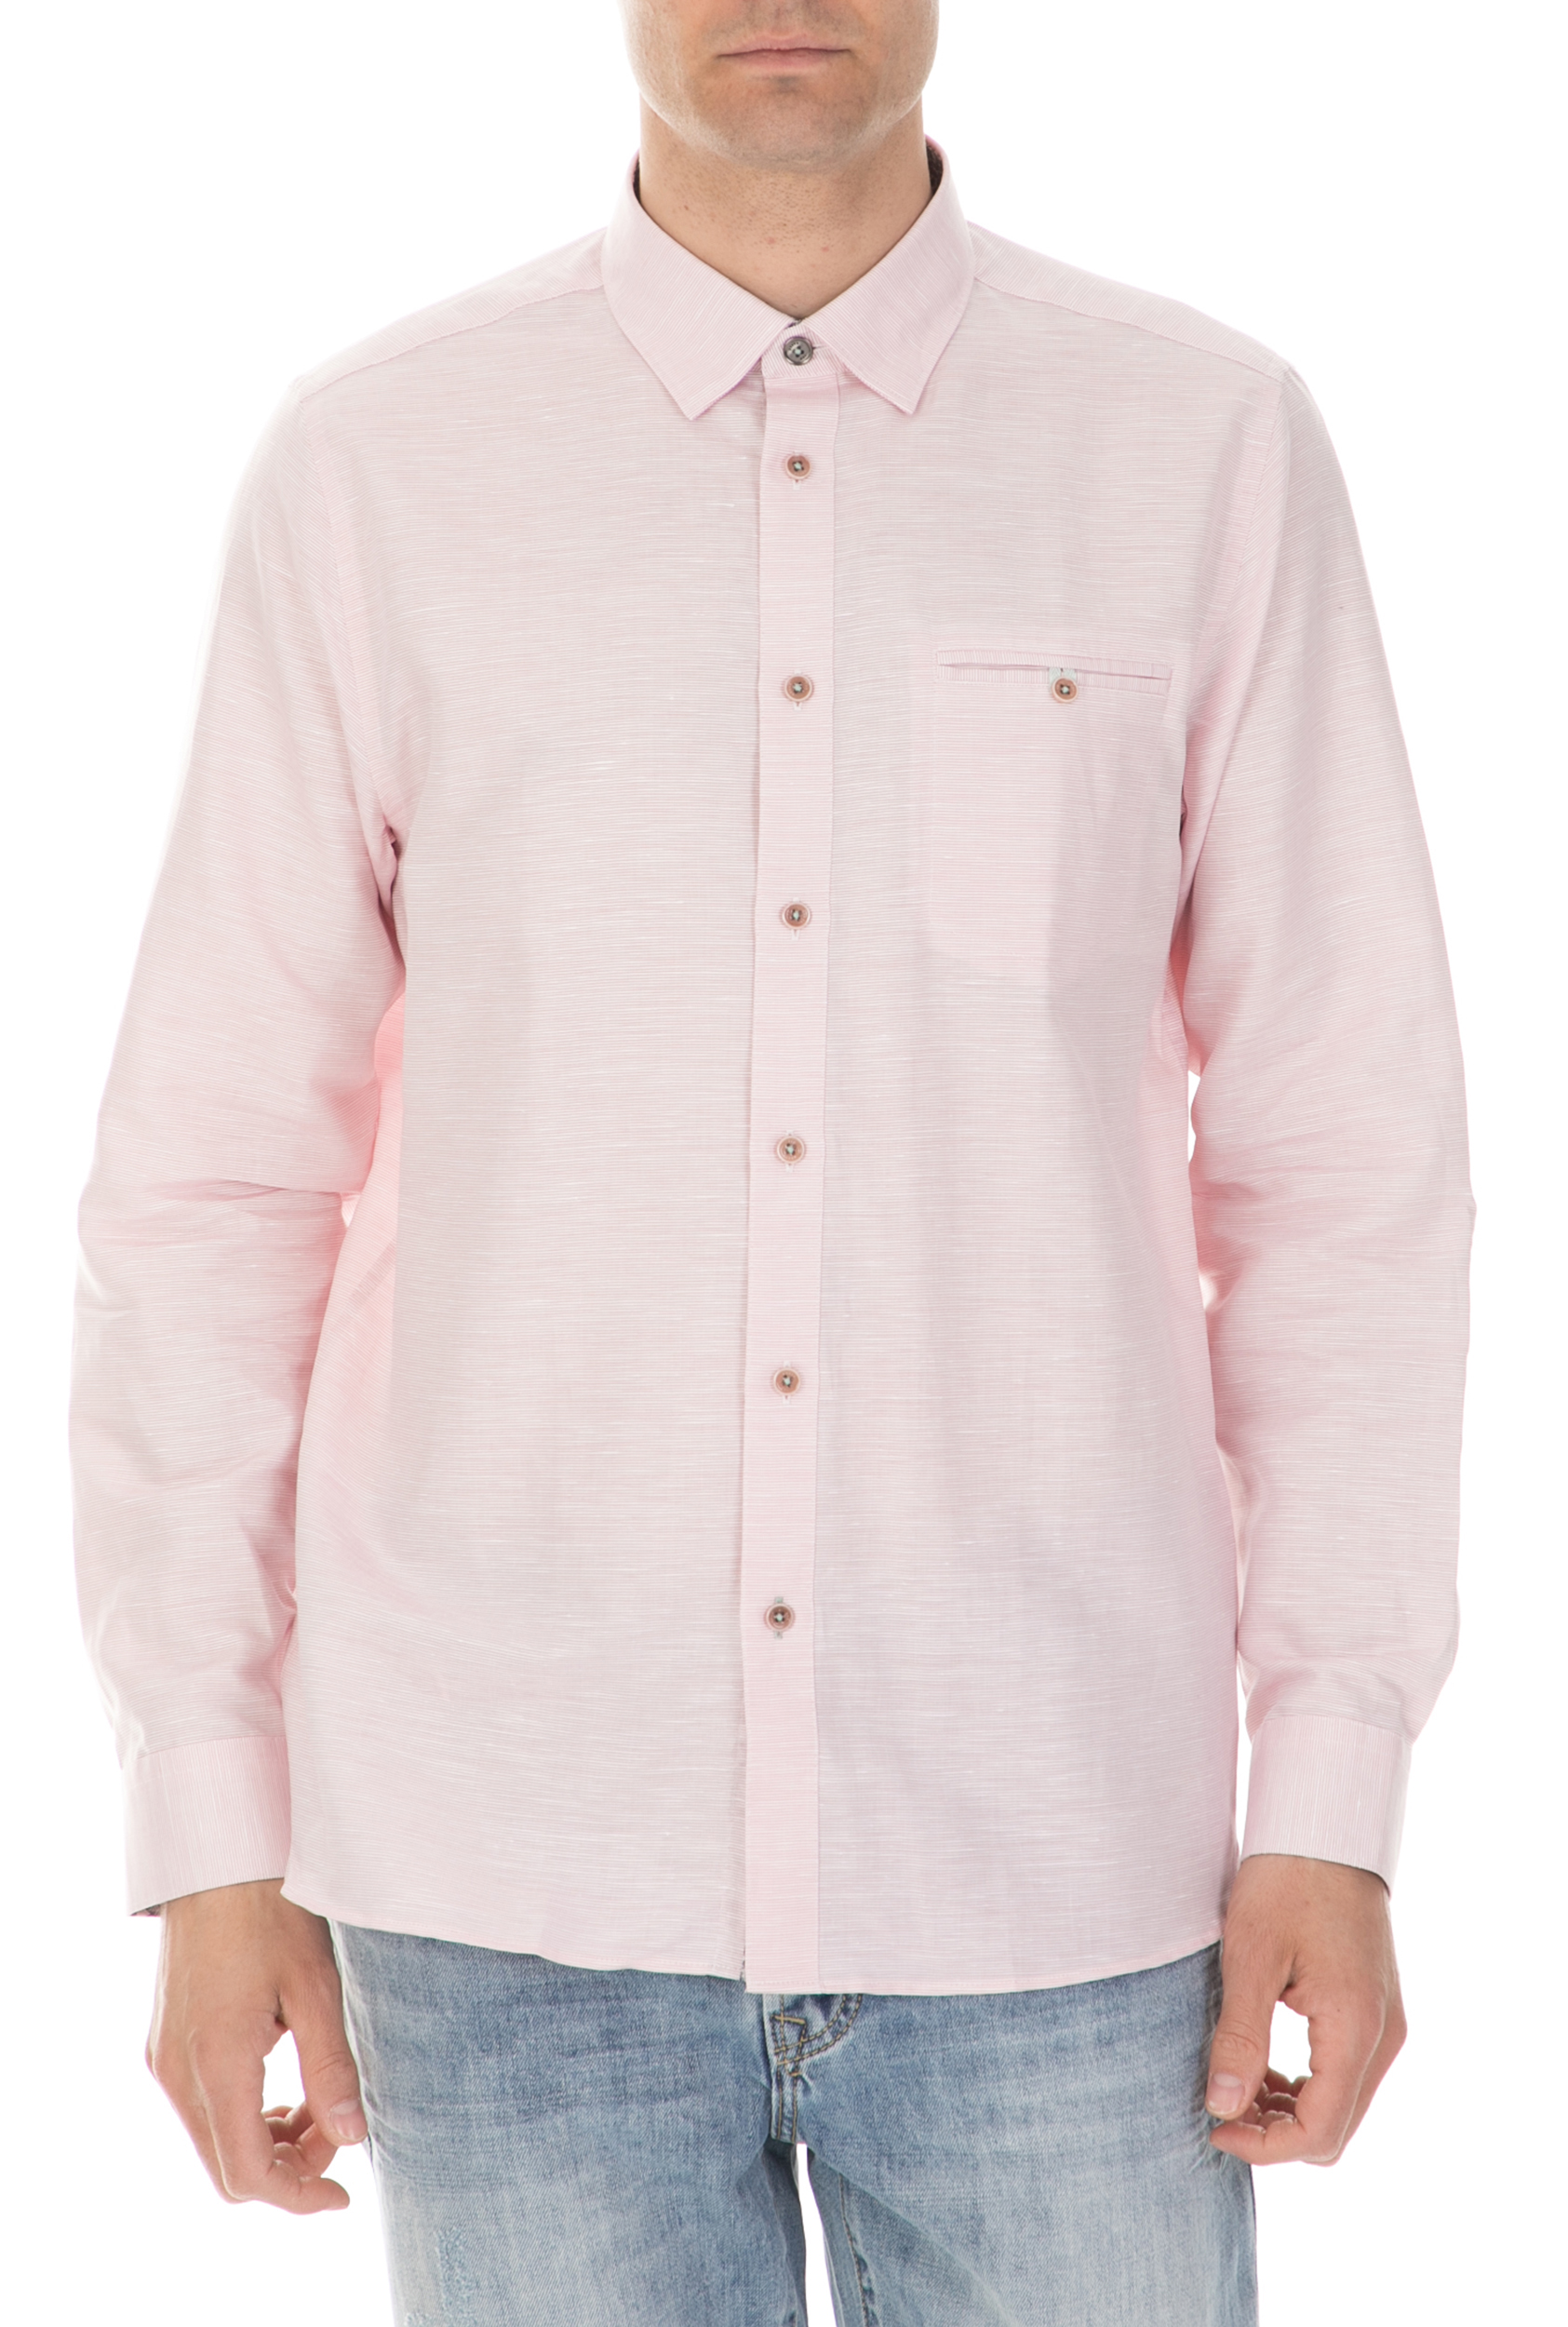 TED BAKER Ανδρικό μακρυμάνικο πουκάμισο TED BAKER RABBBT ροζ